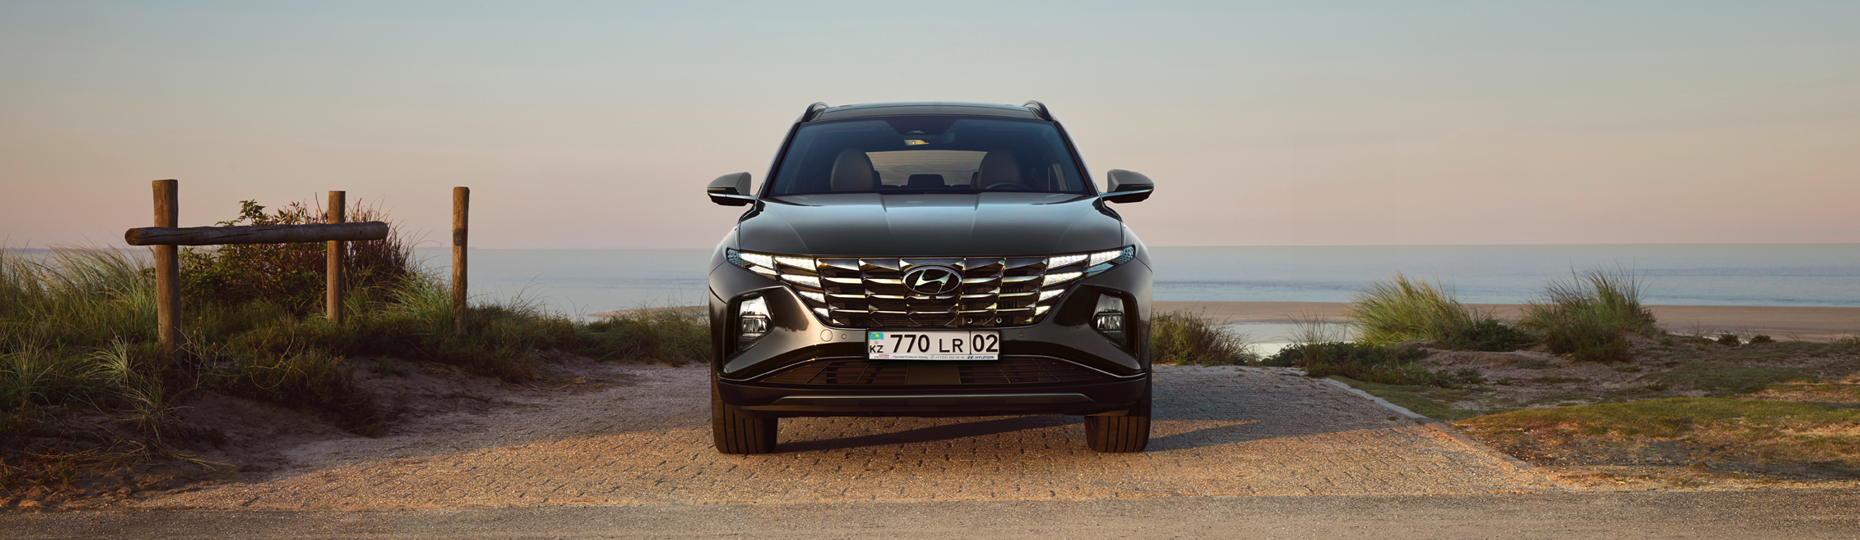 Производительность нового Hyundai Tucson | Официальный дилер в Костанае